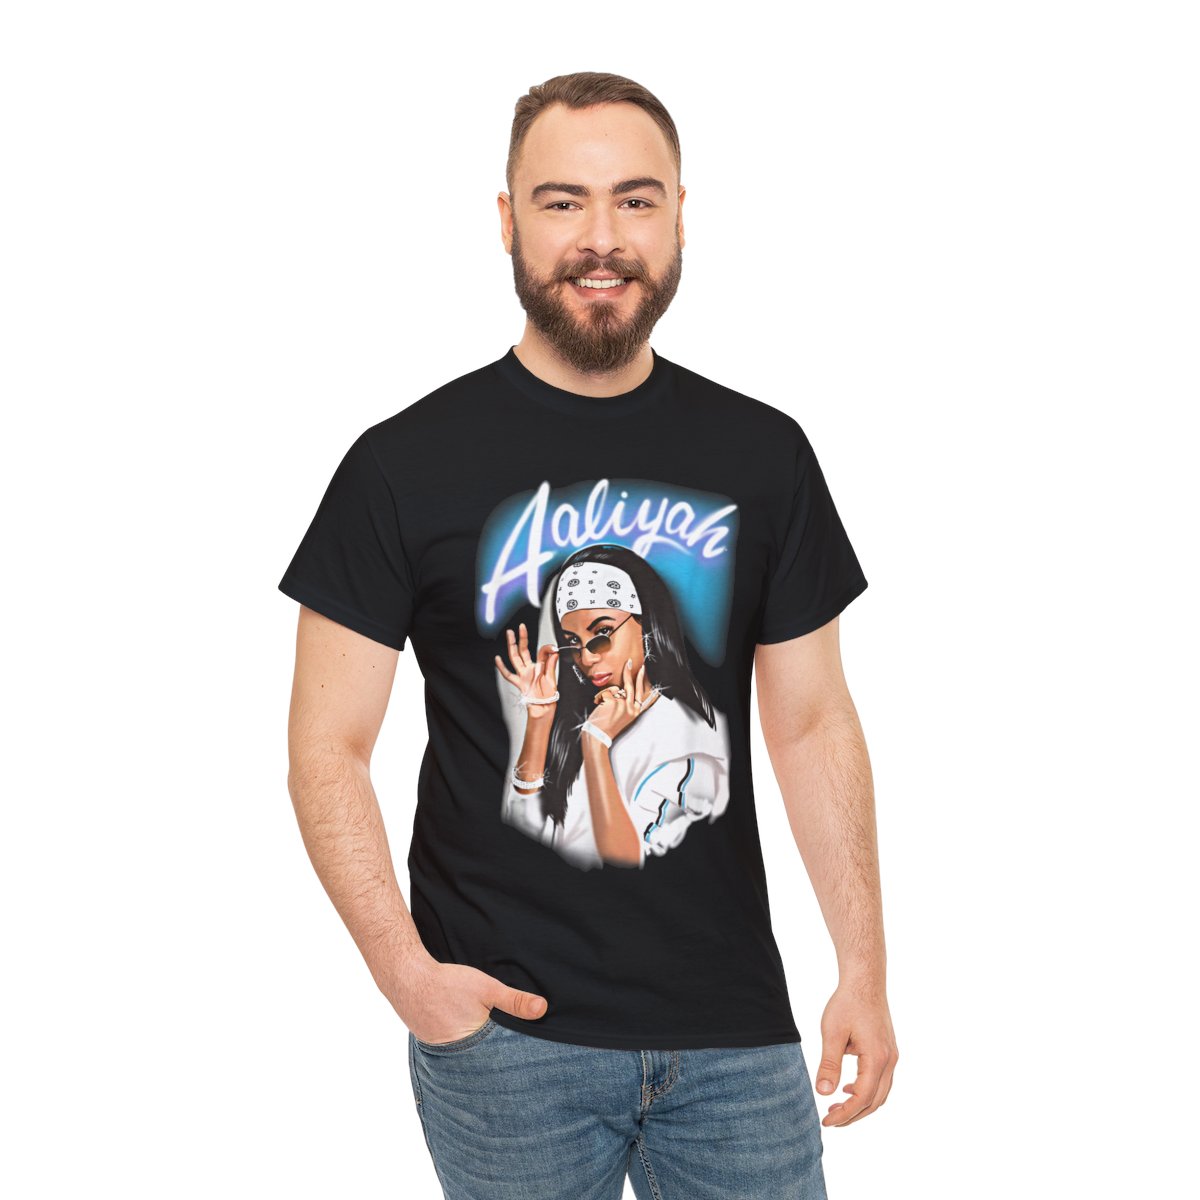 Aaliyah Airbrush Bandana Photo Graphic T-Shirt